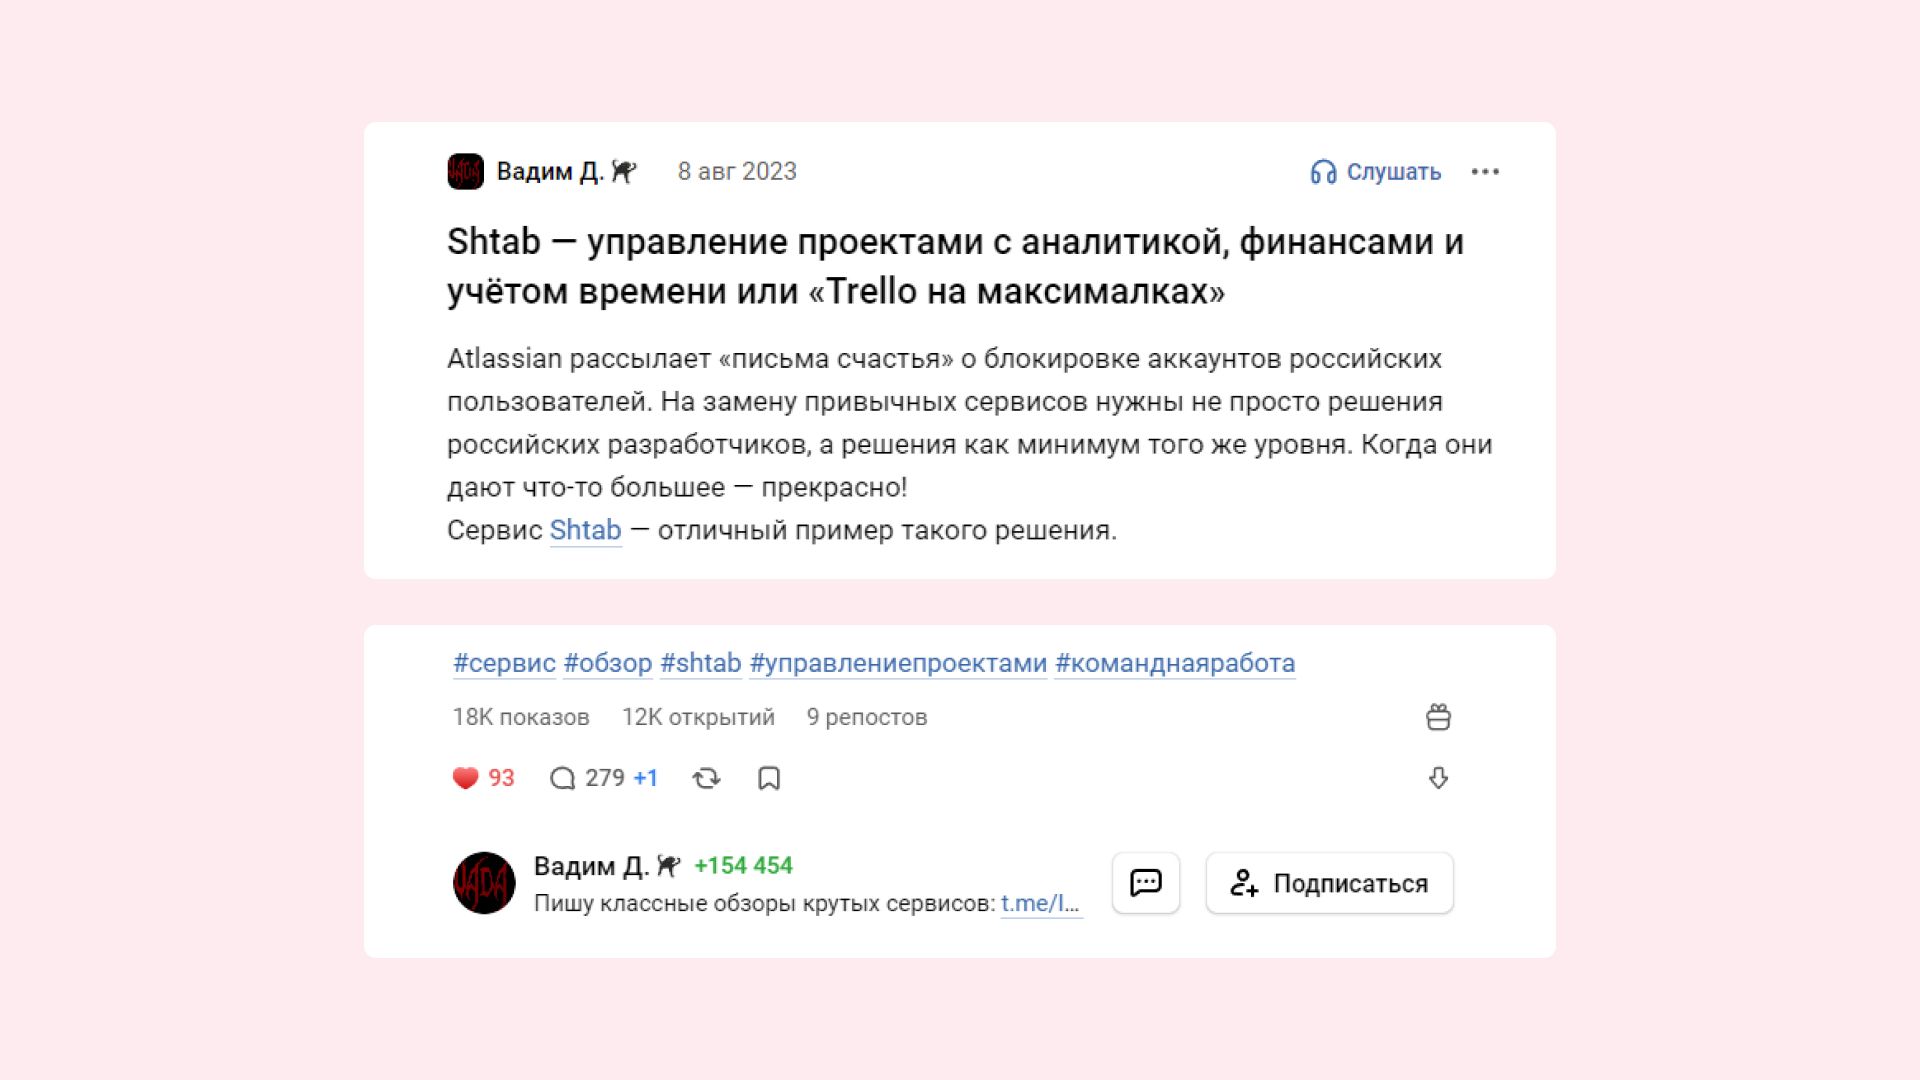 Статья-обзор функций сервиса Shtab на vc.ru